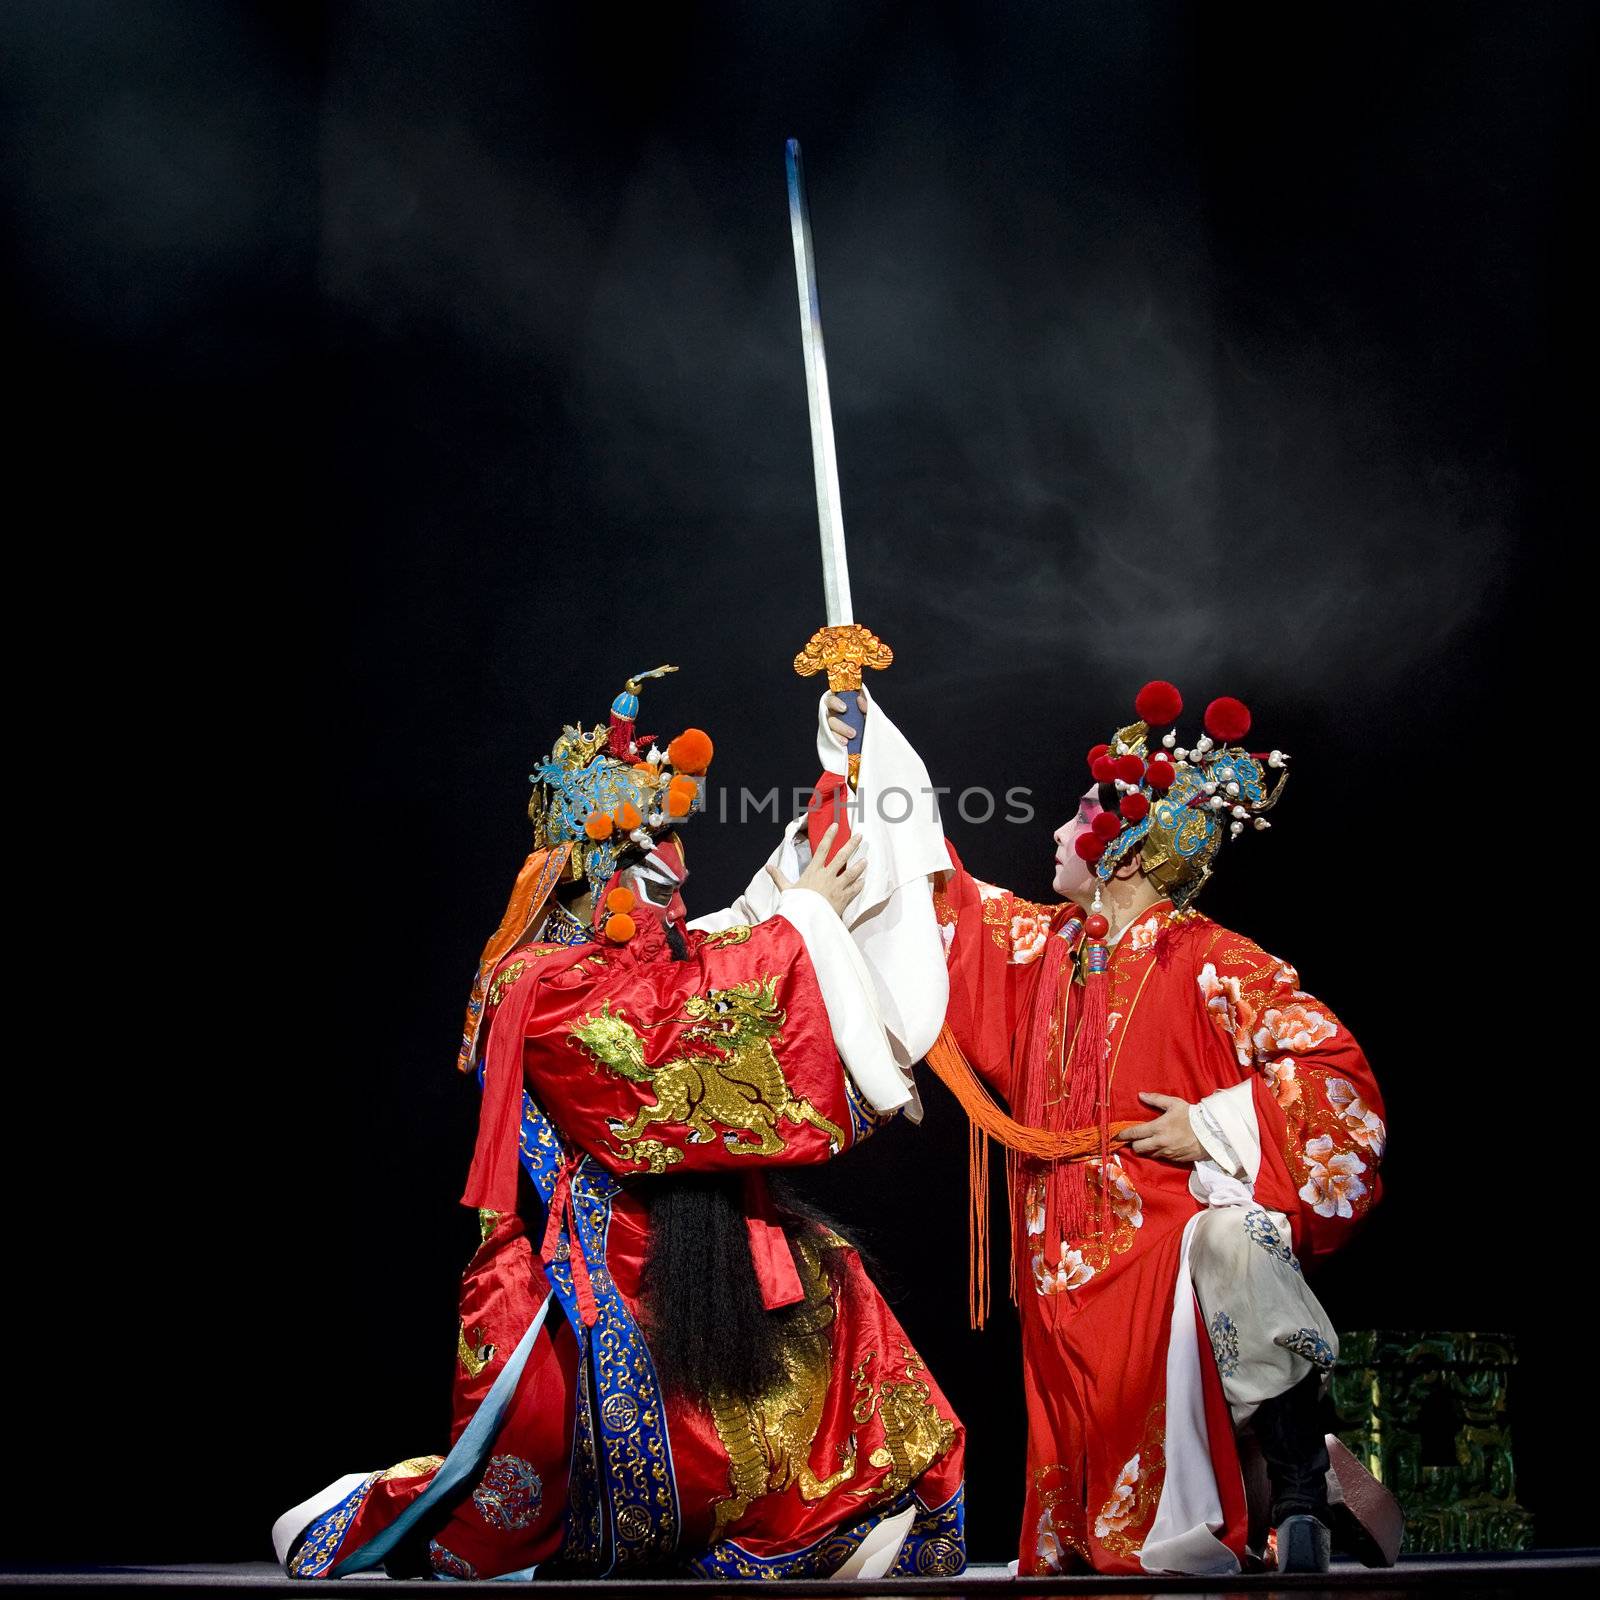 CHENGDU - OCT 26: Zhejiang Kunqu Opera theater perform Gongshunzidu at Jinsha theater.OCT 26, 2008 in Chengdu, China.
The leading role is the famous opera actor Lin Weilin.